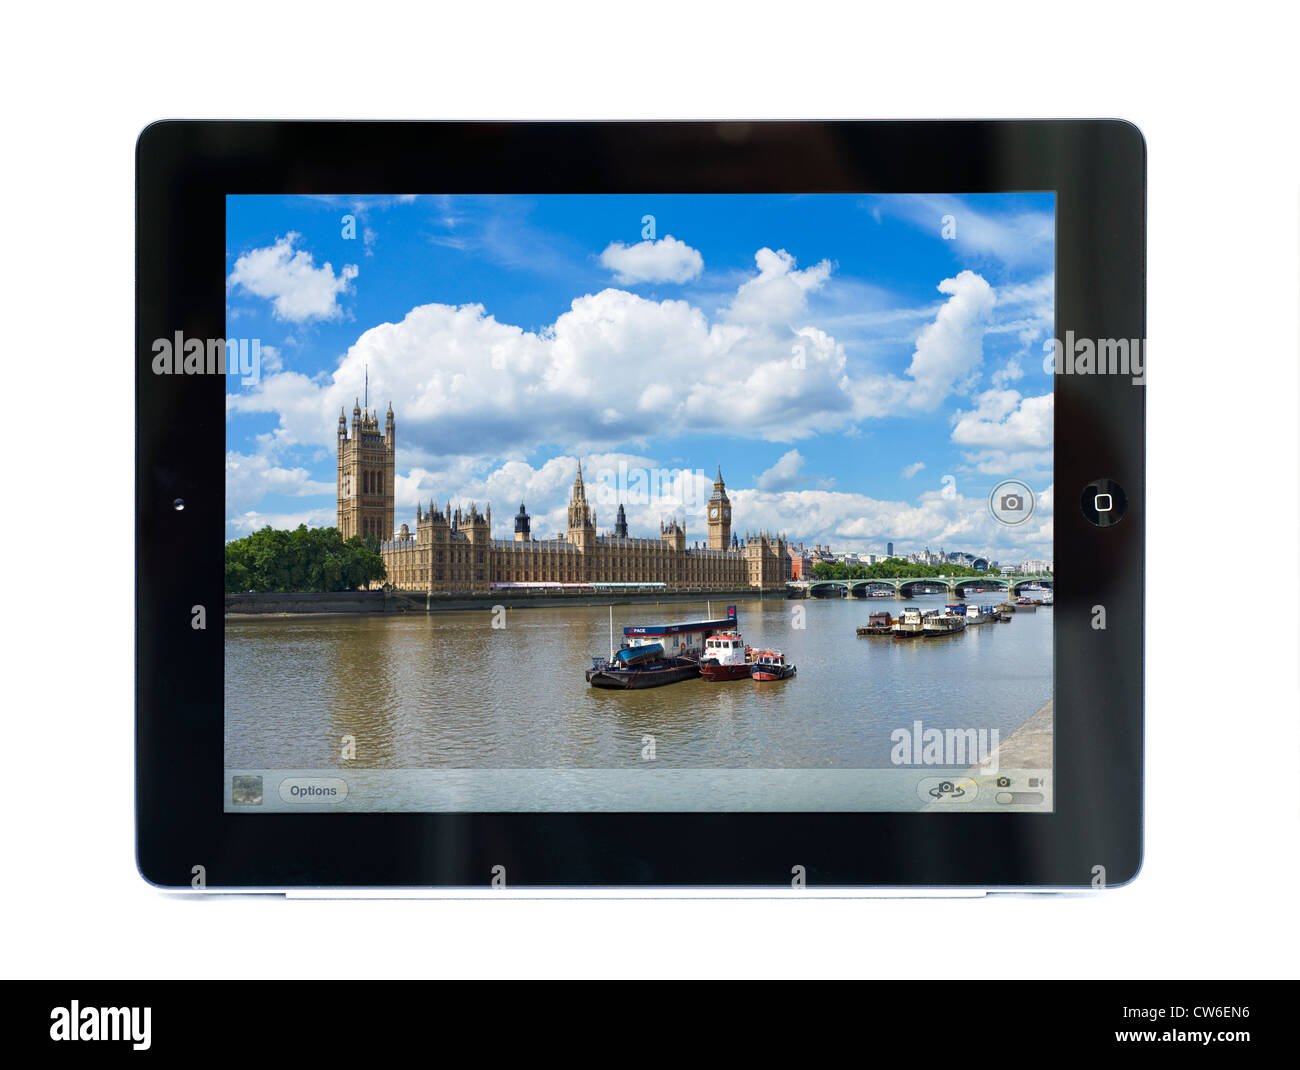 Fotocamera su un Apple iPad 3 che mostra le case del parlamento di Londra, Inghilterra Foto Stock